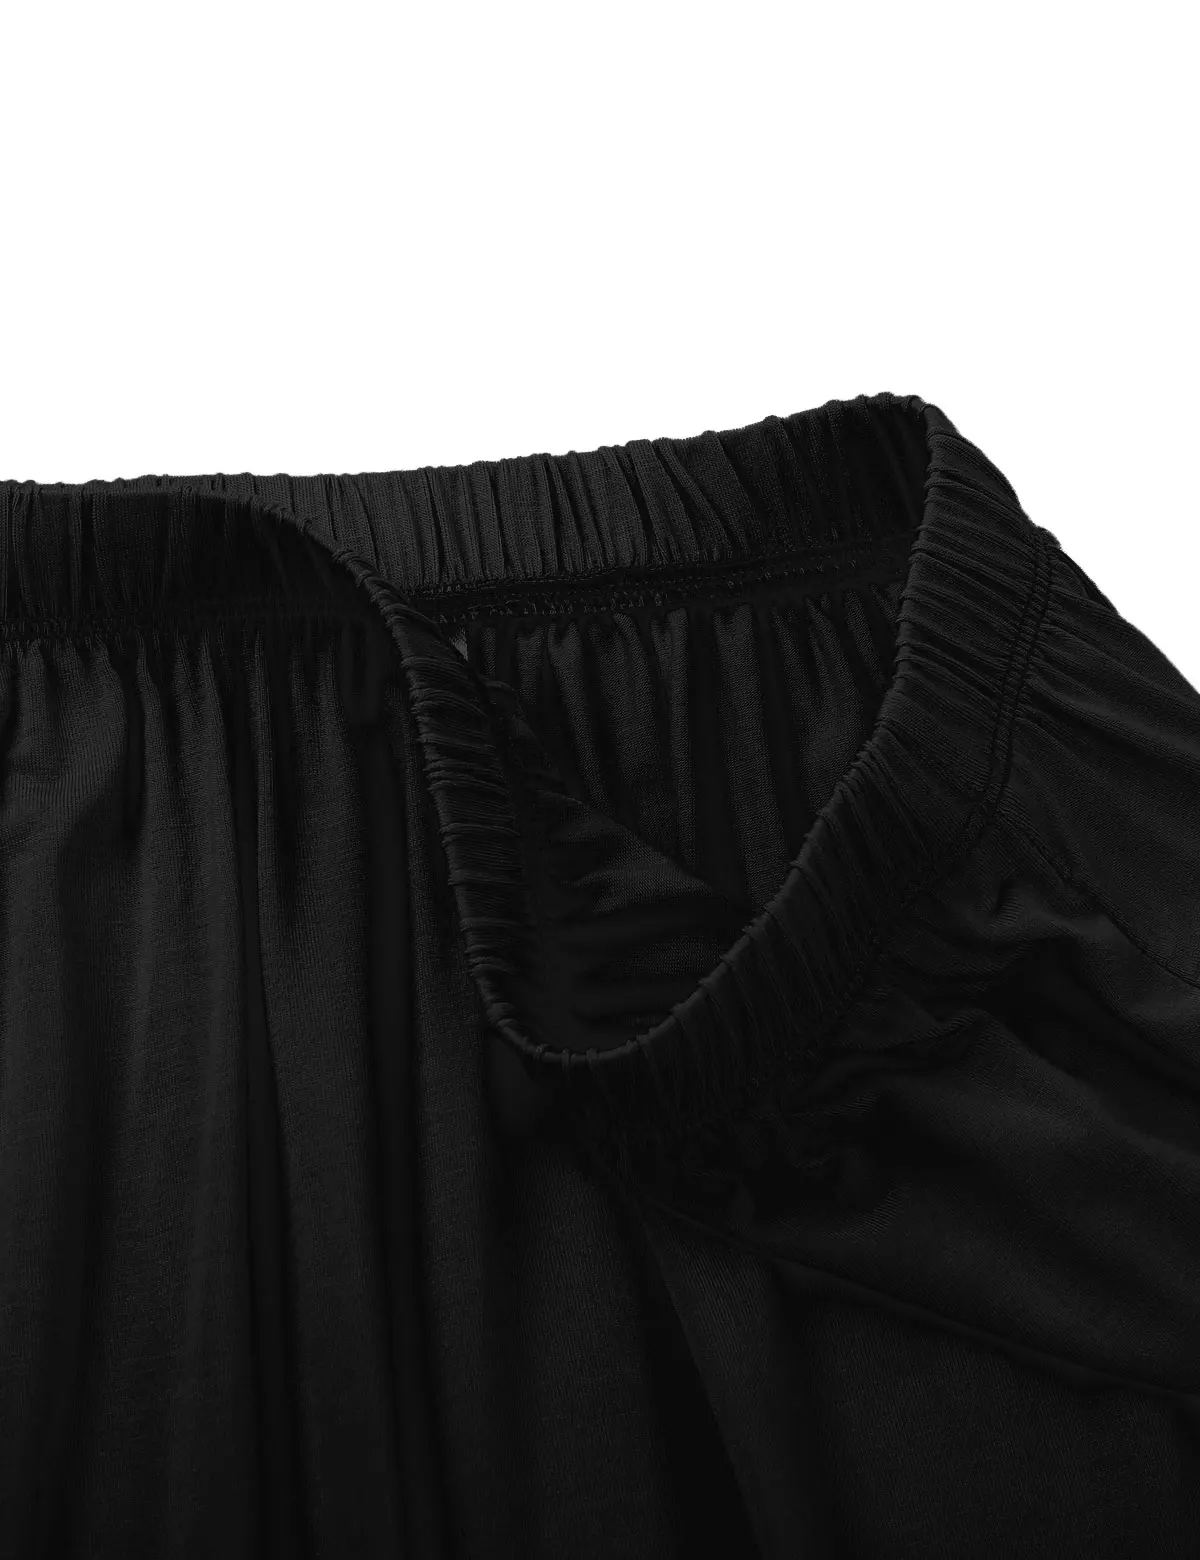 Женская винтажная мягкая Нижняя Юбка До Колена кринолиновая Свадебная Нижняя юбка кружевная юбка многослойная юбка